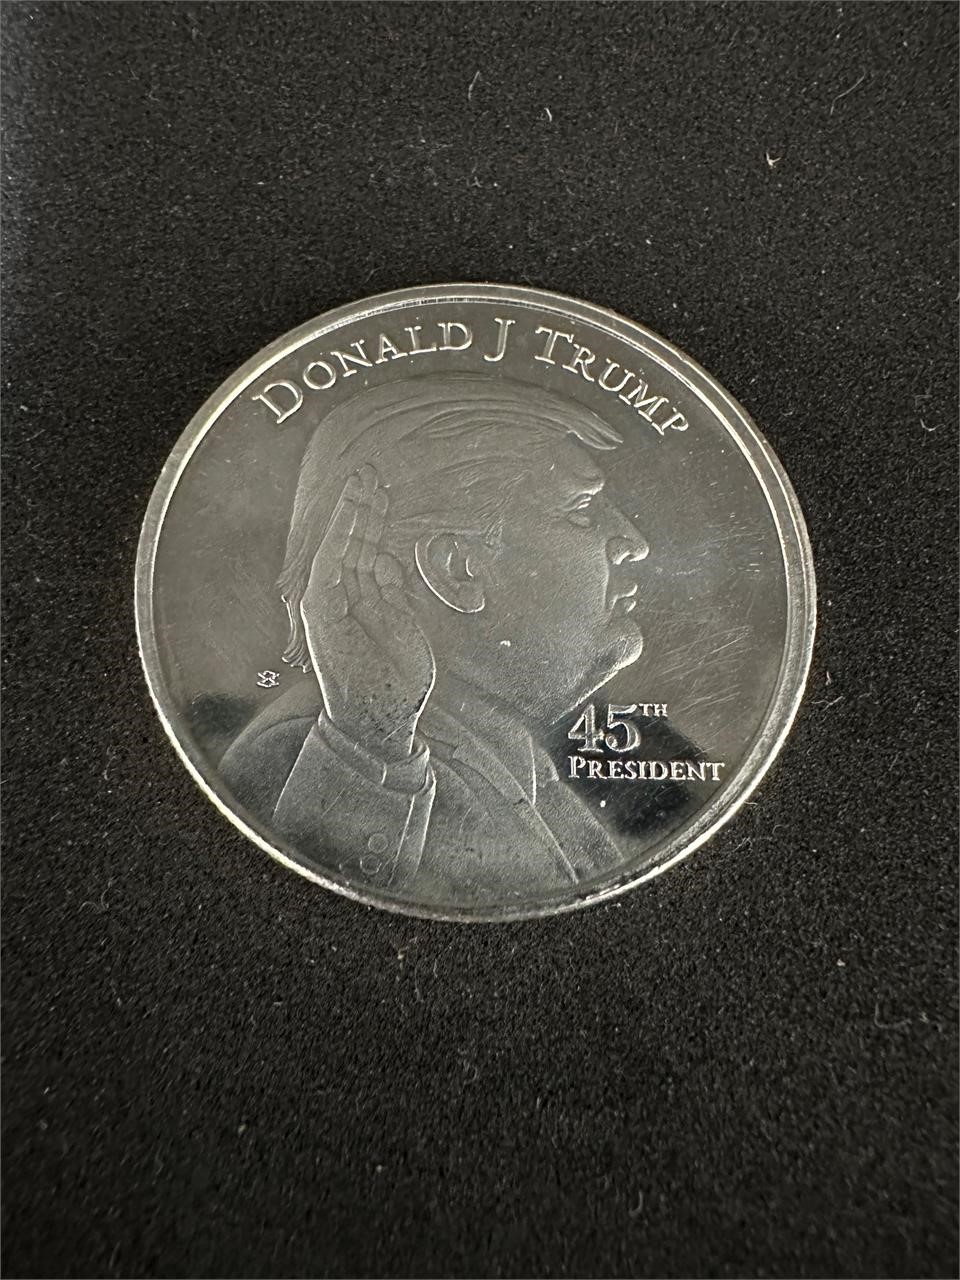 1 oz silver trump coin